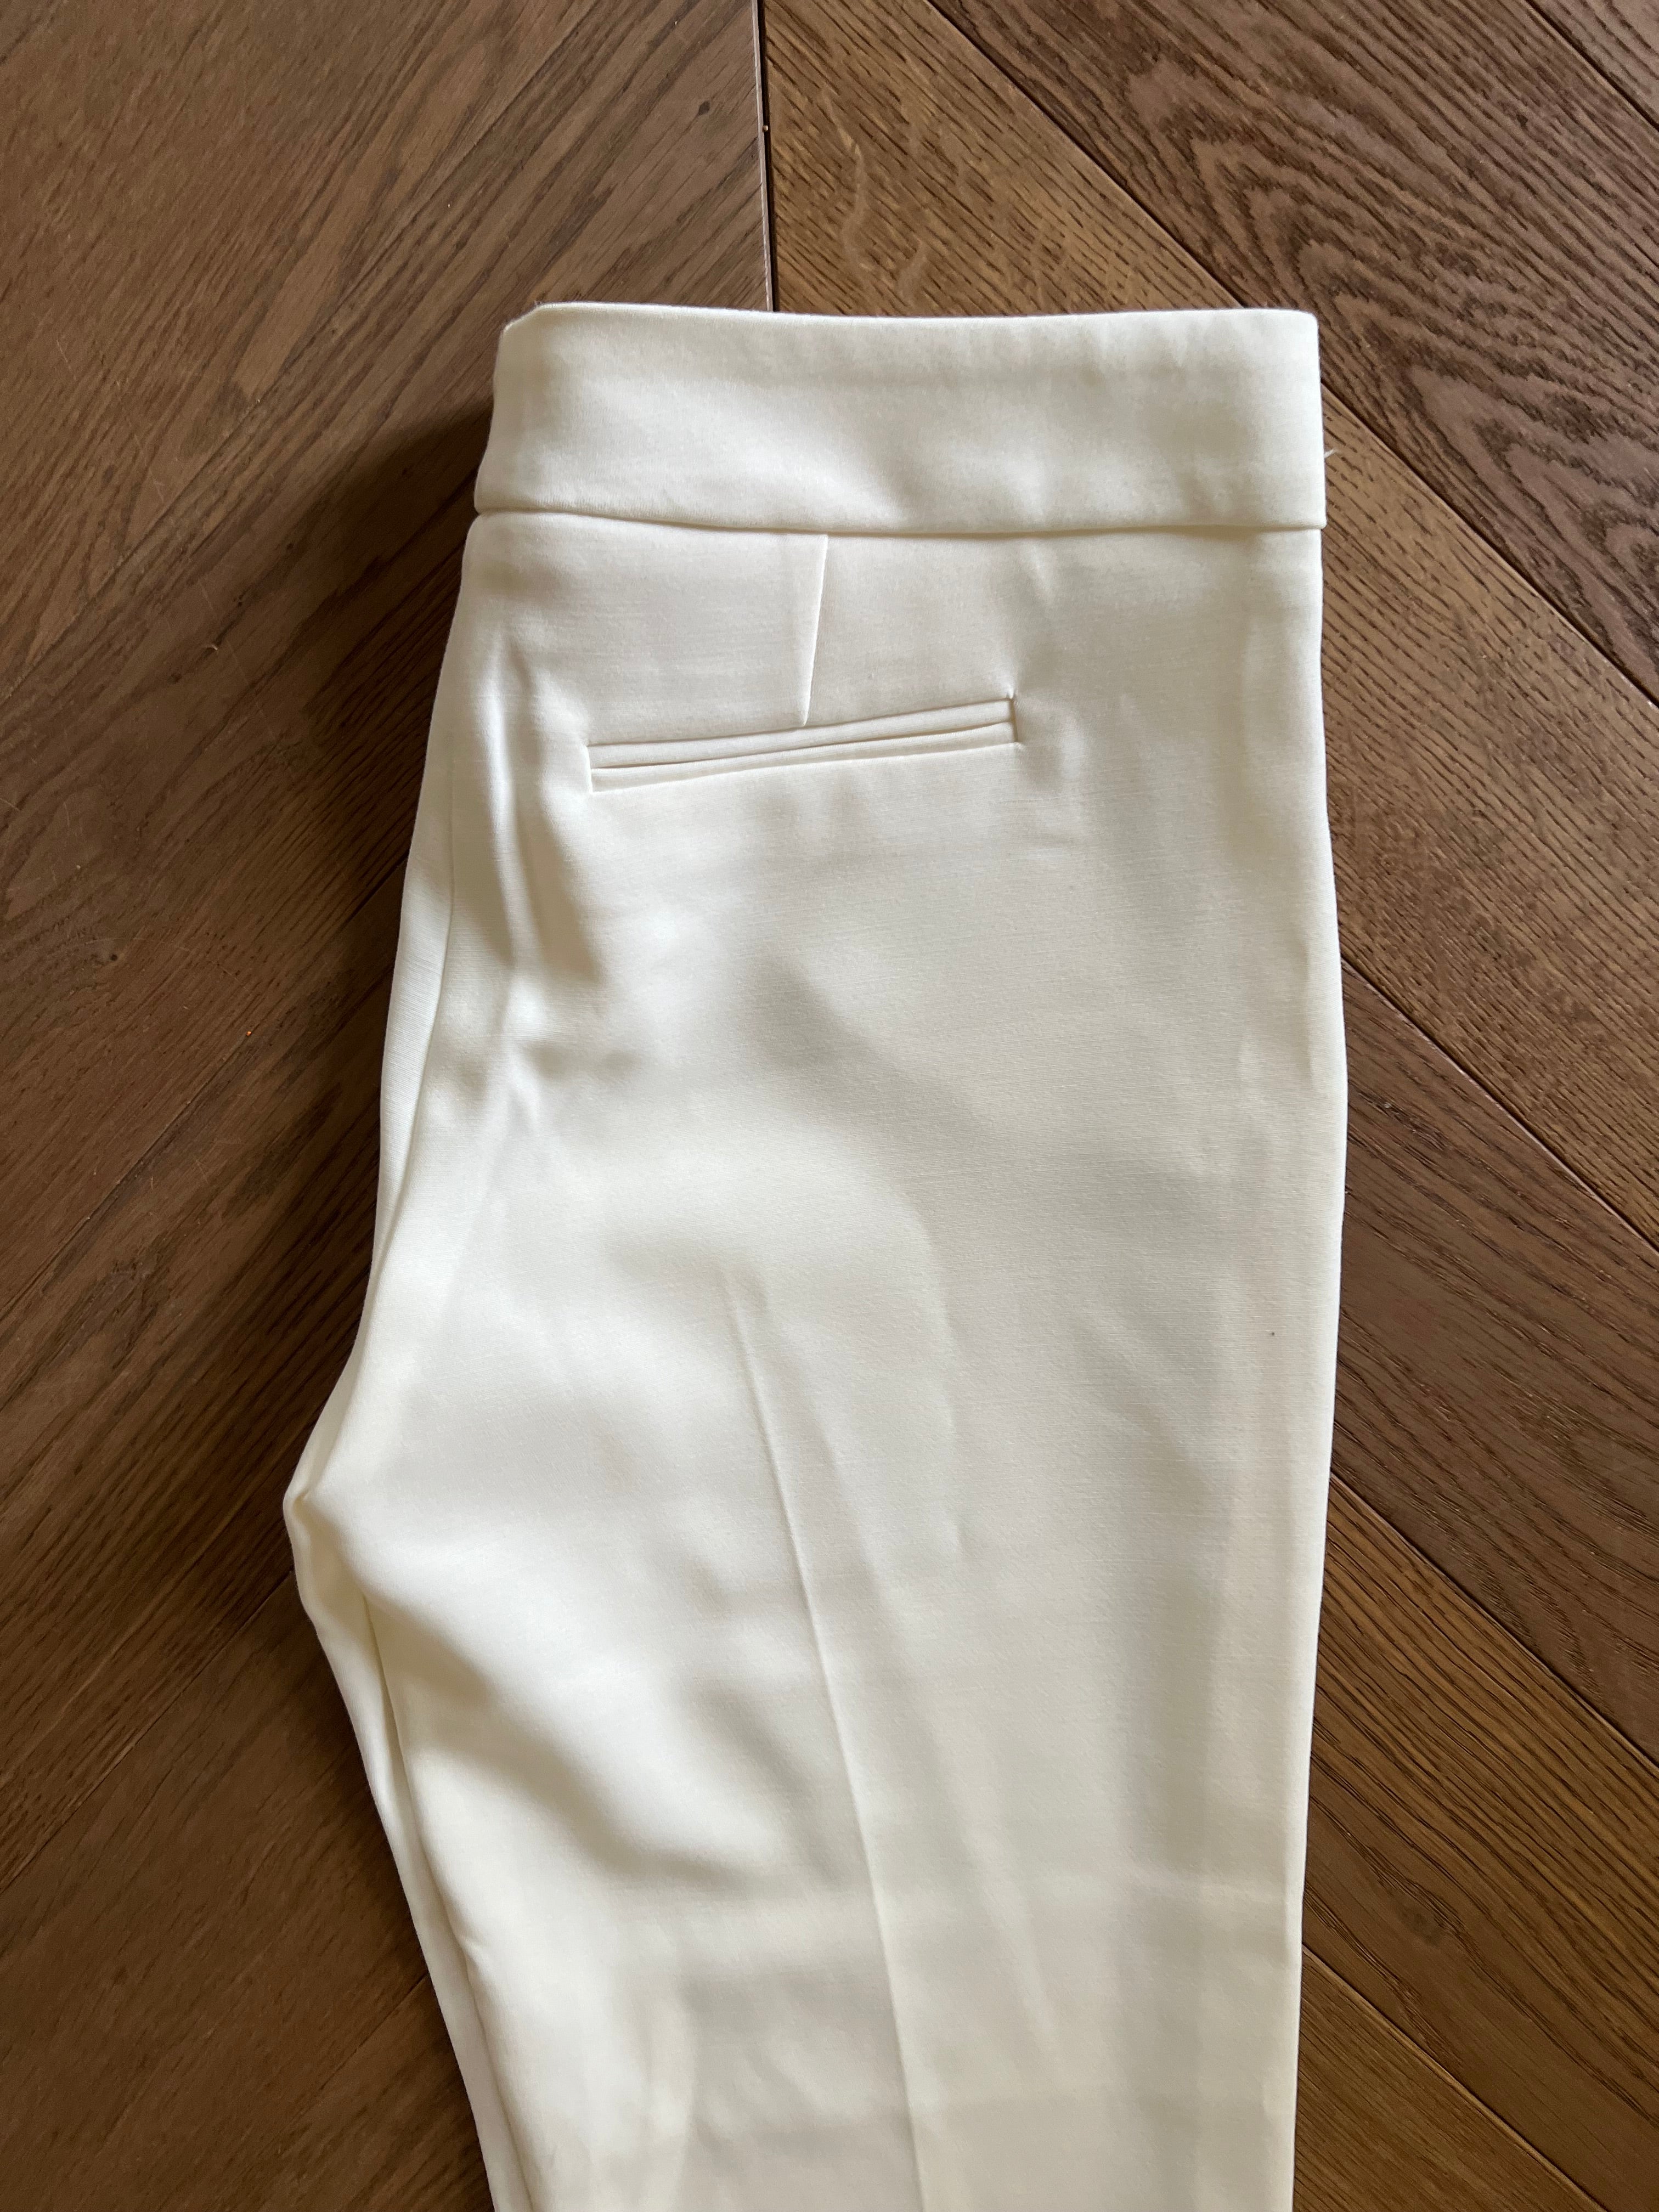 Pantalon Belair blanc évasé